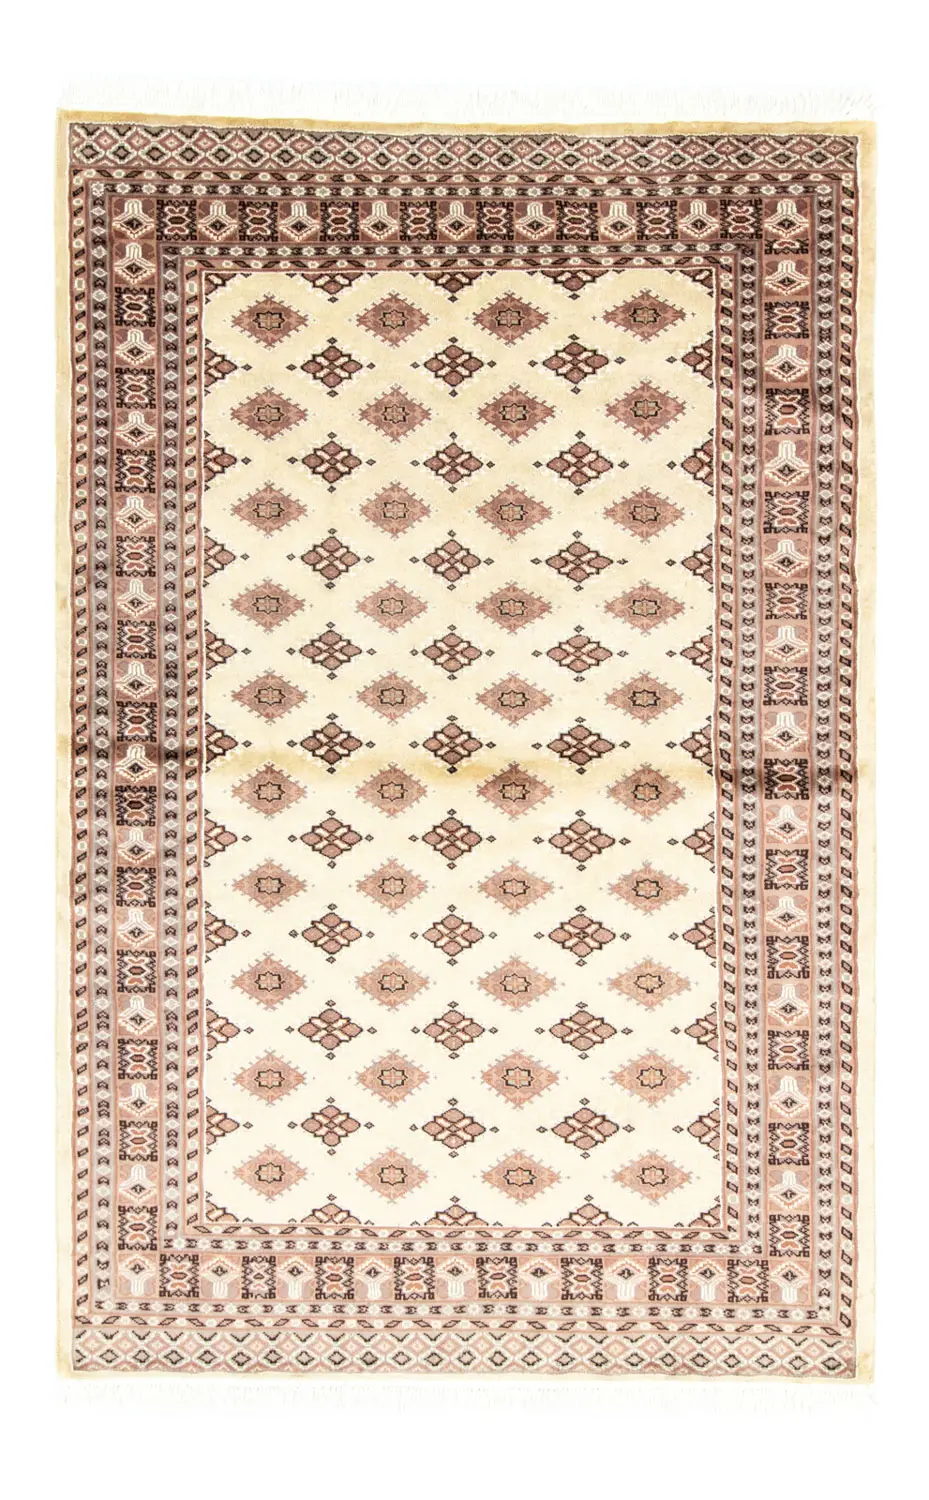 Pakistan Teppich - 188 x 126 cm - beige